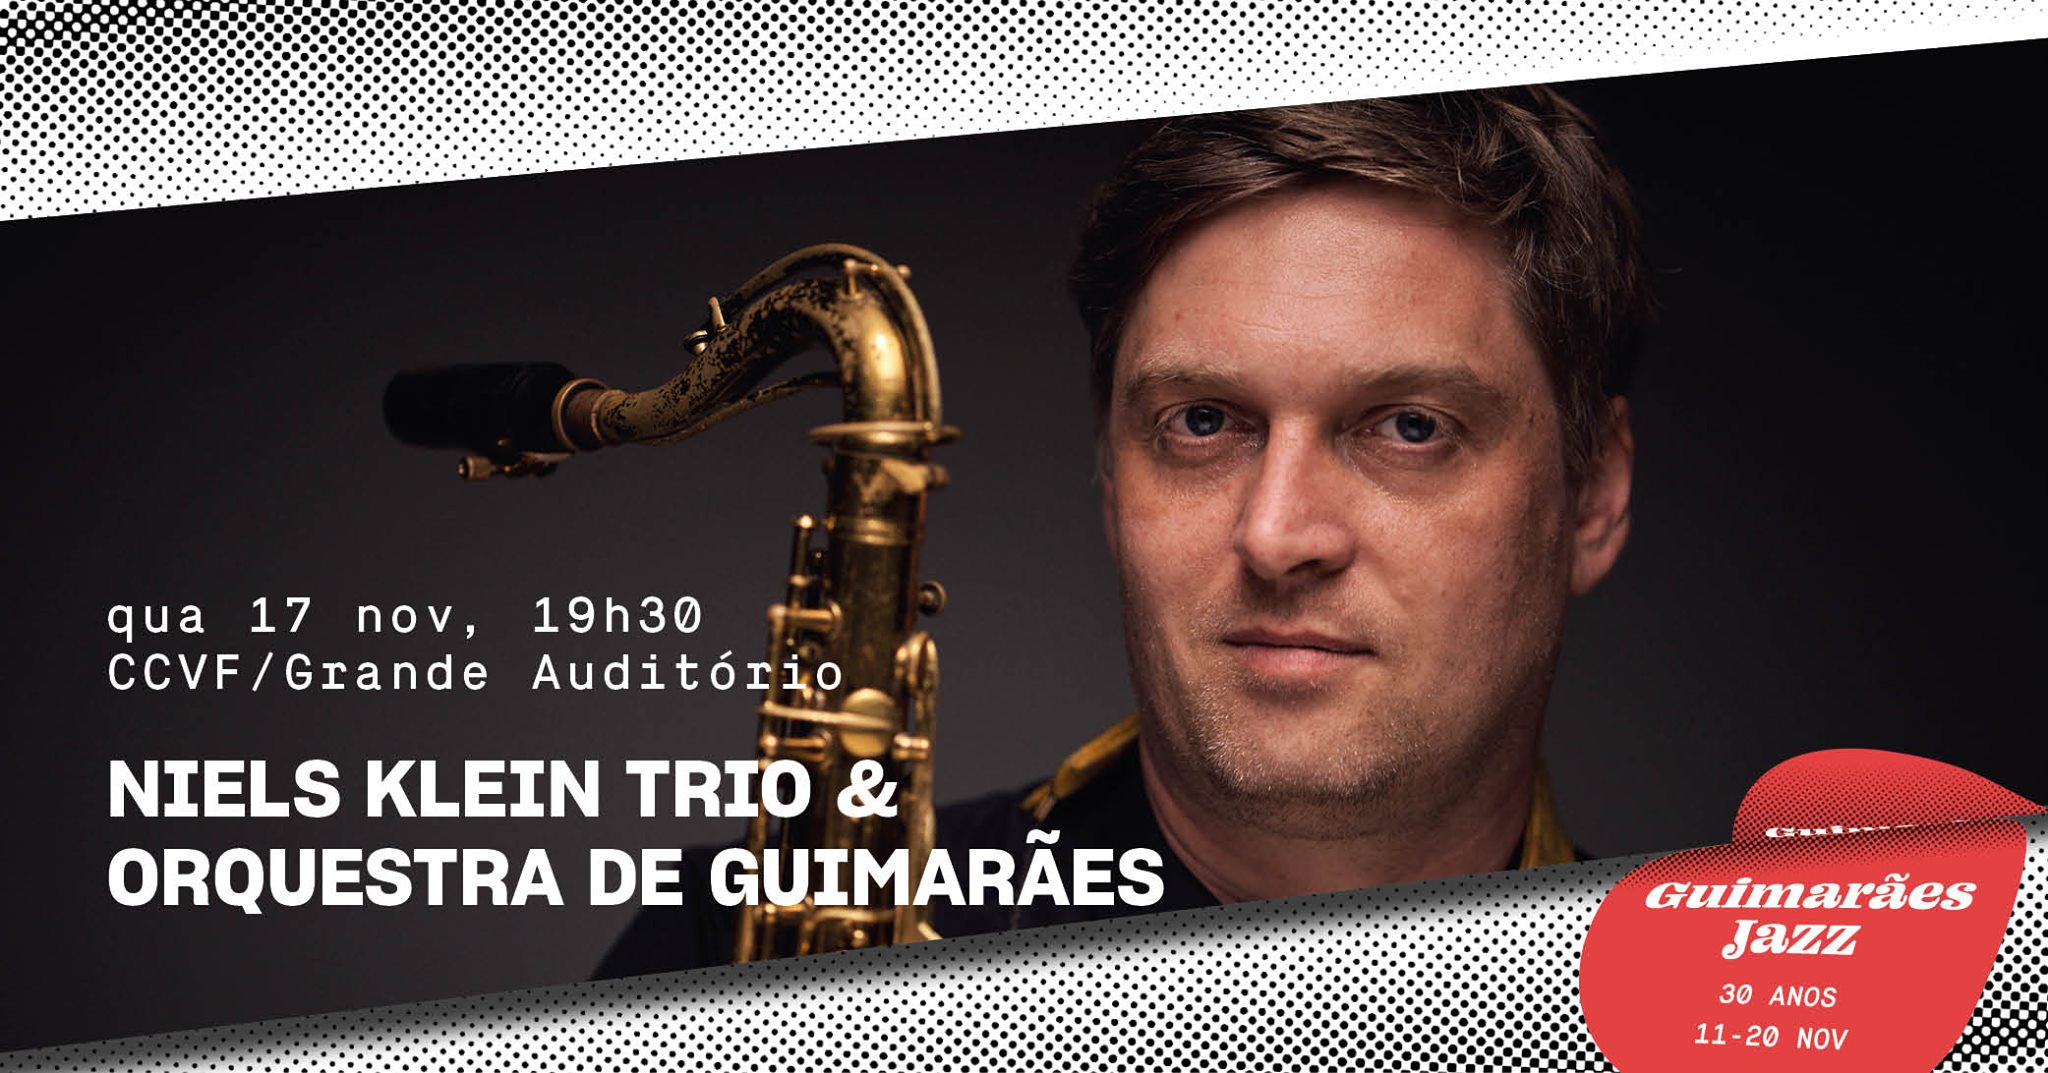 Guimarães Jazz 2021 • Niels Klein Trio & Orquestra de Guimarães